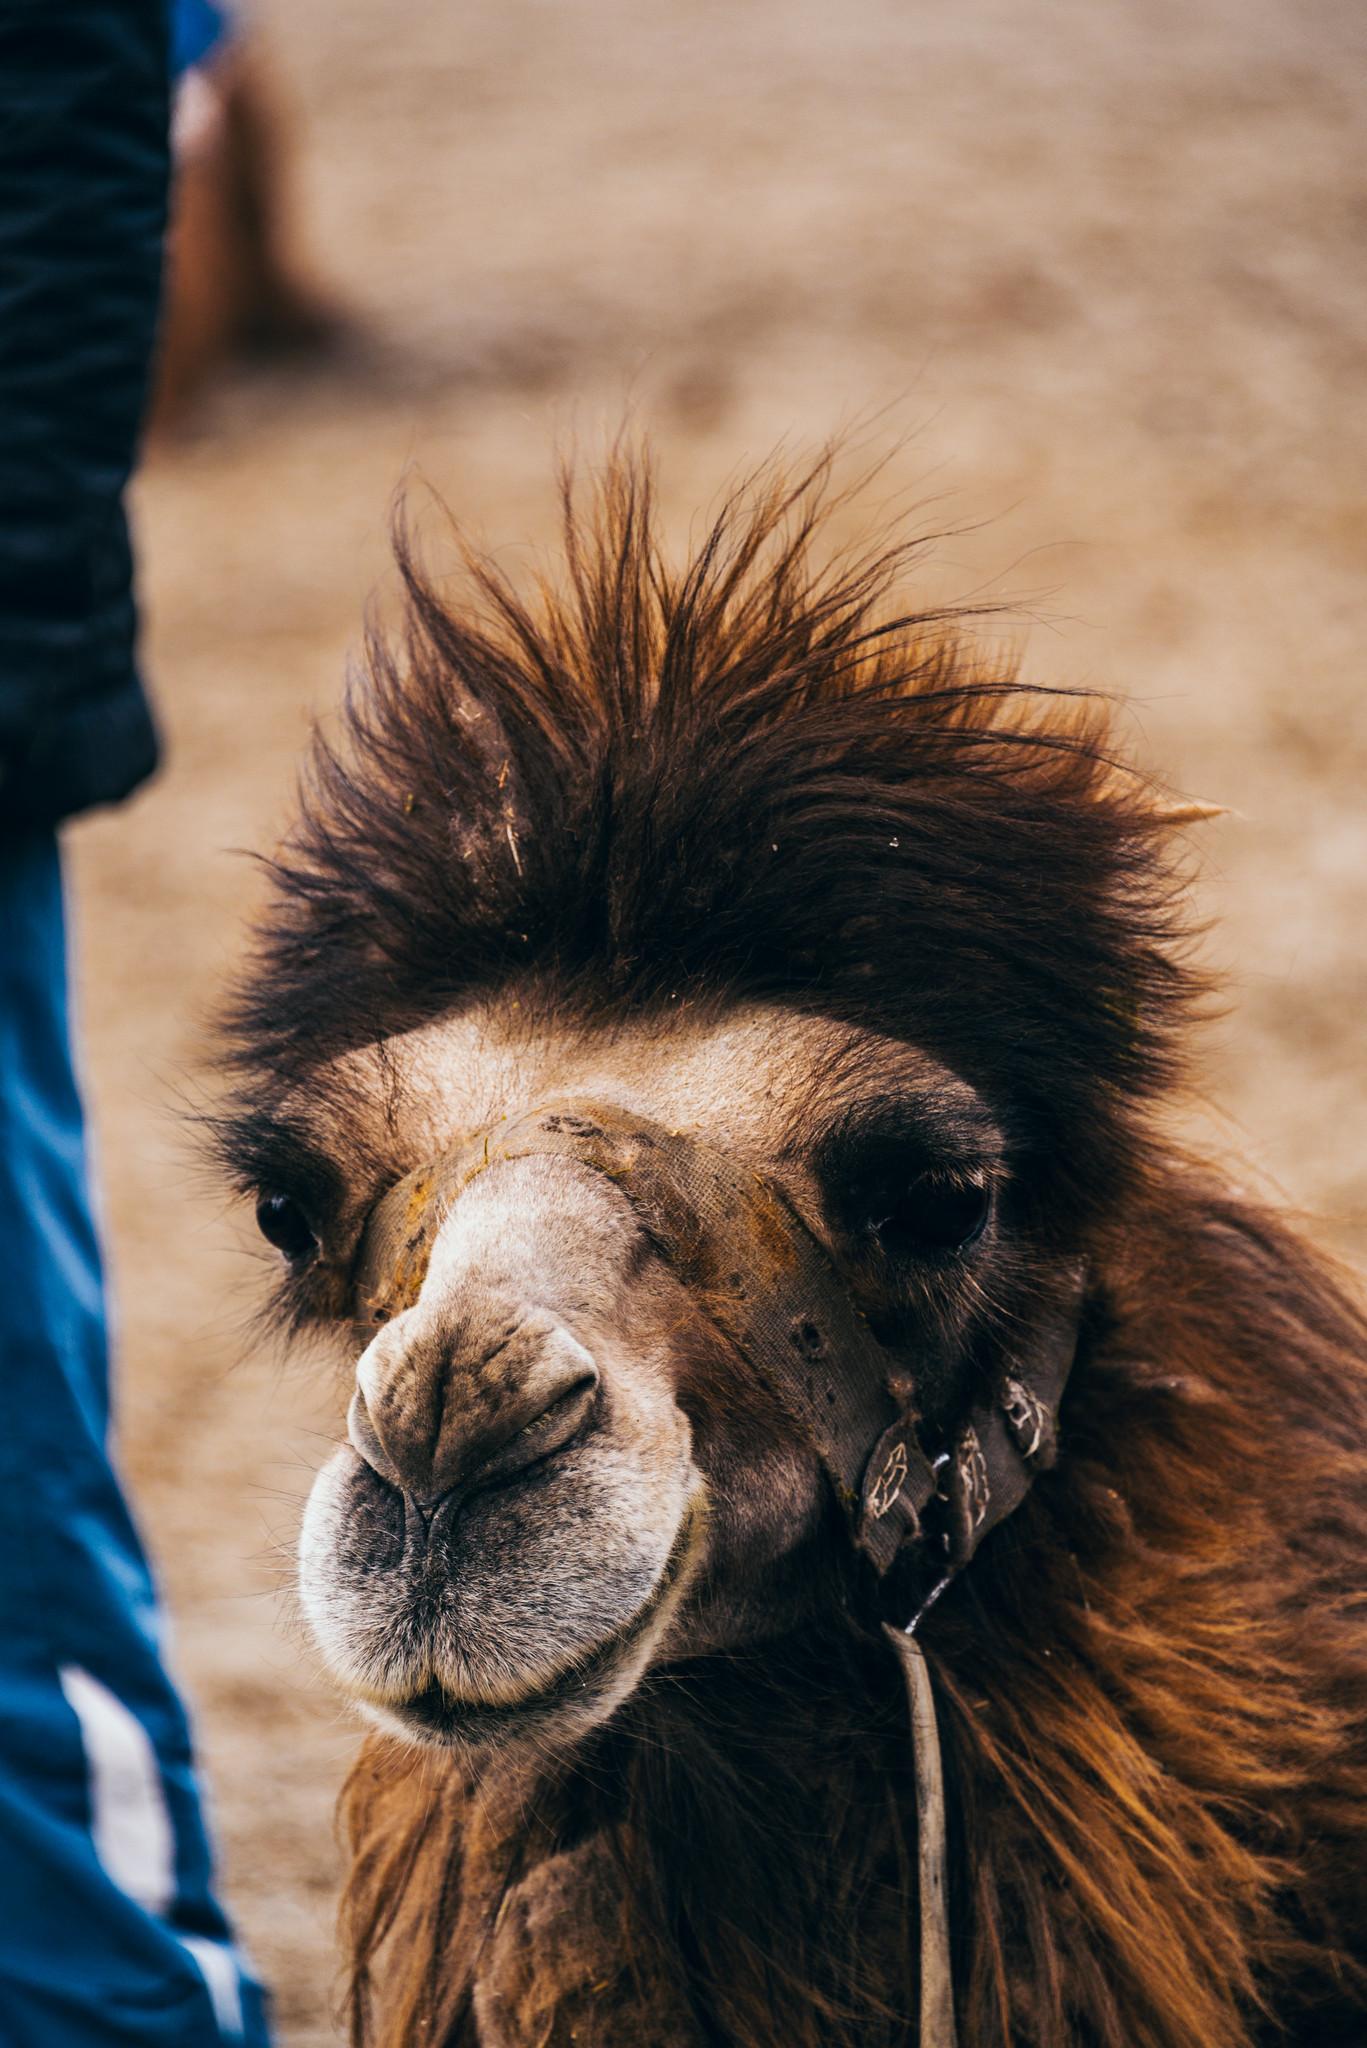 A Camel's Face